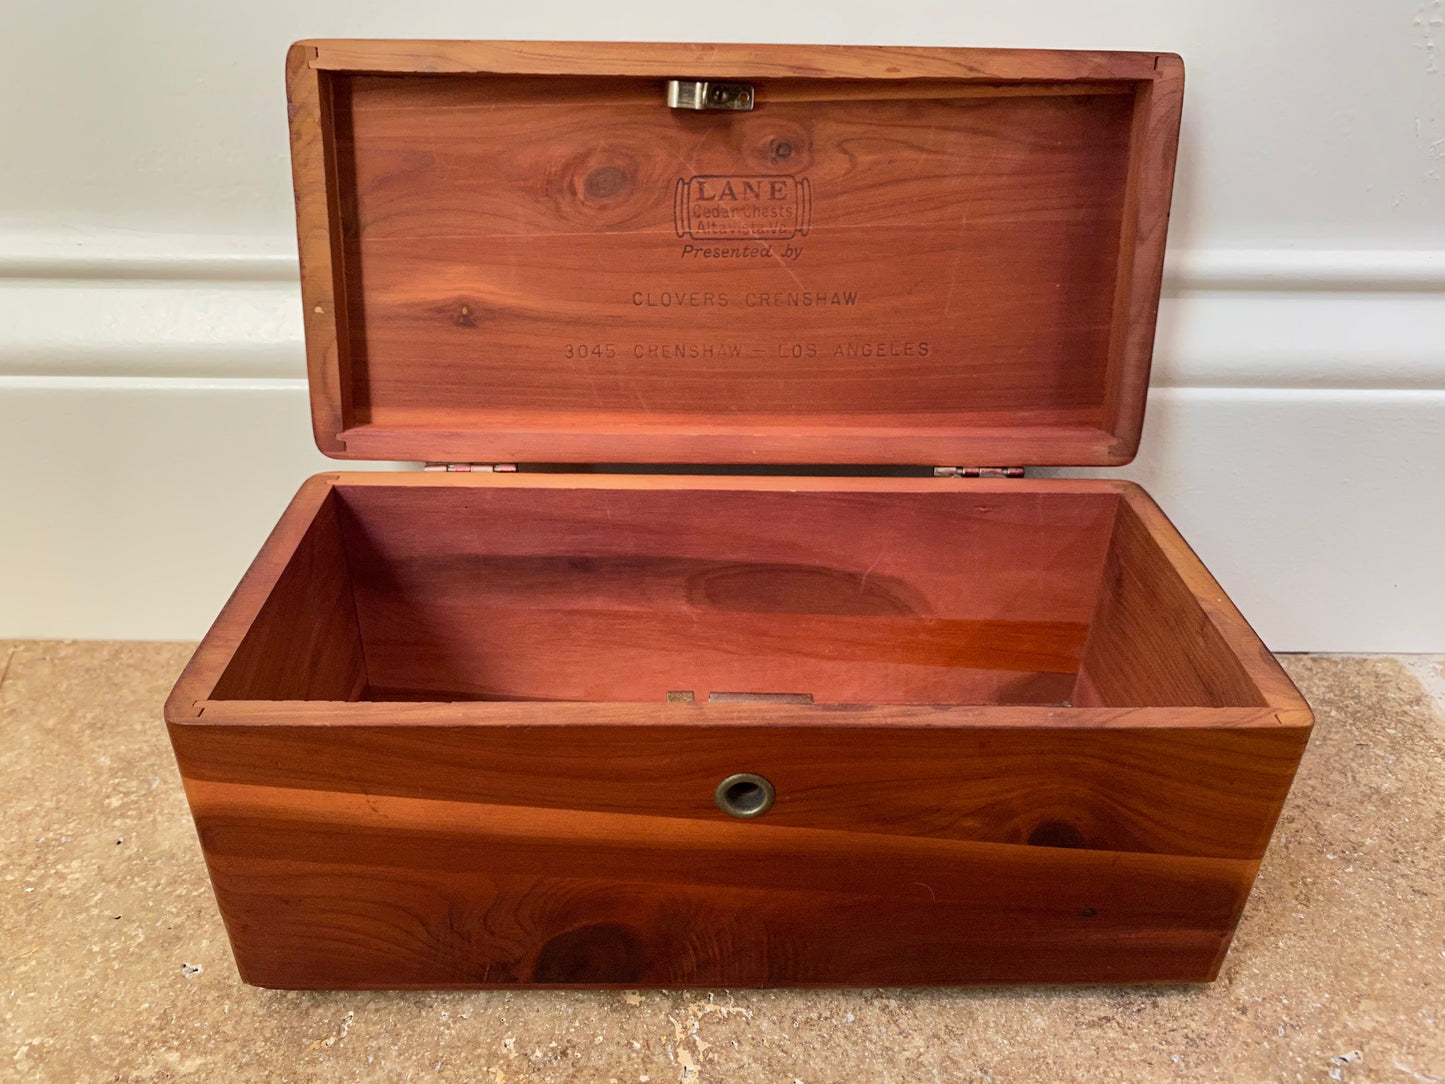 Petite Cedar Box